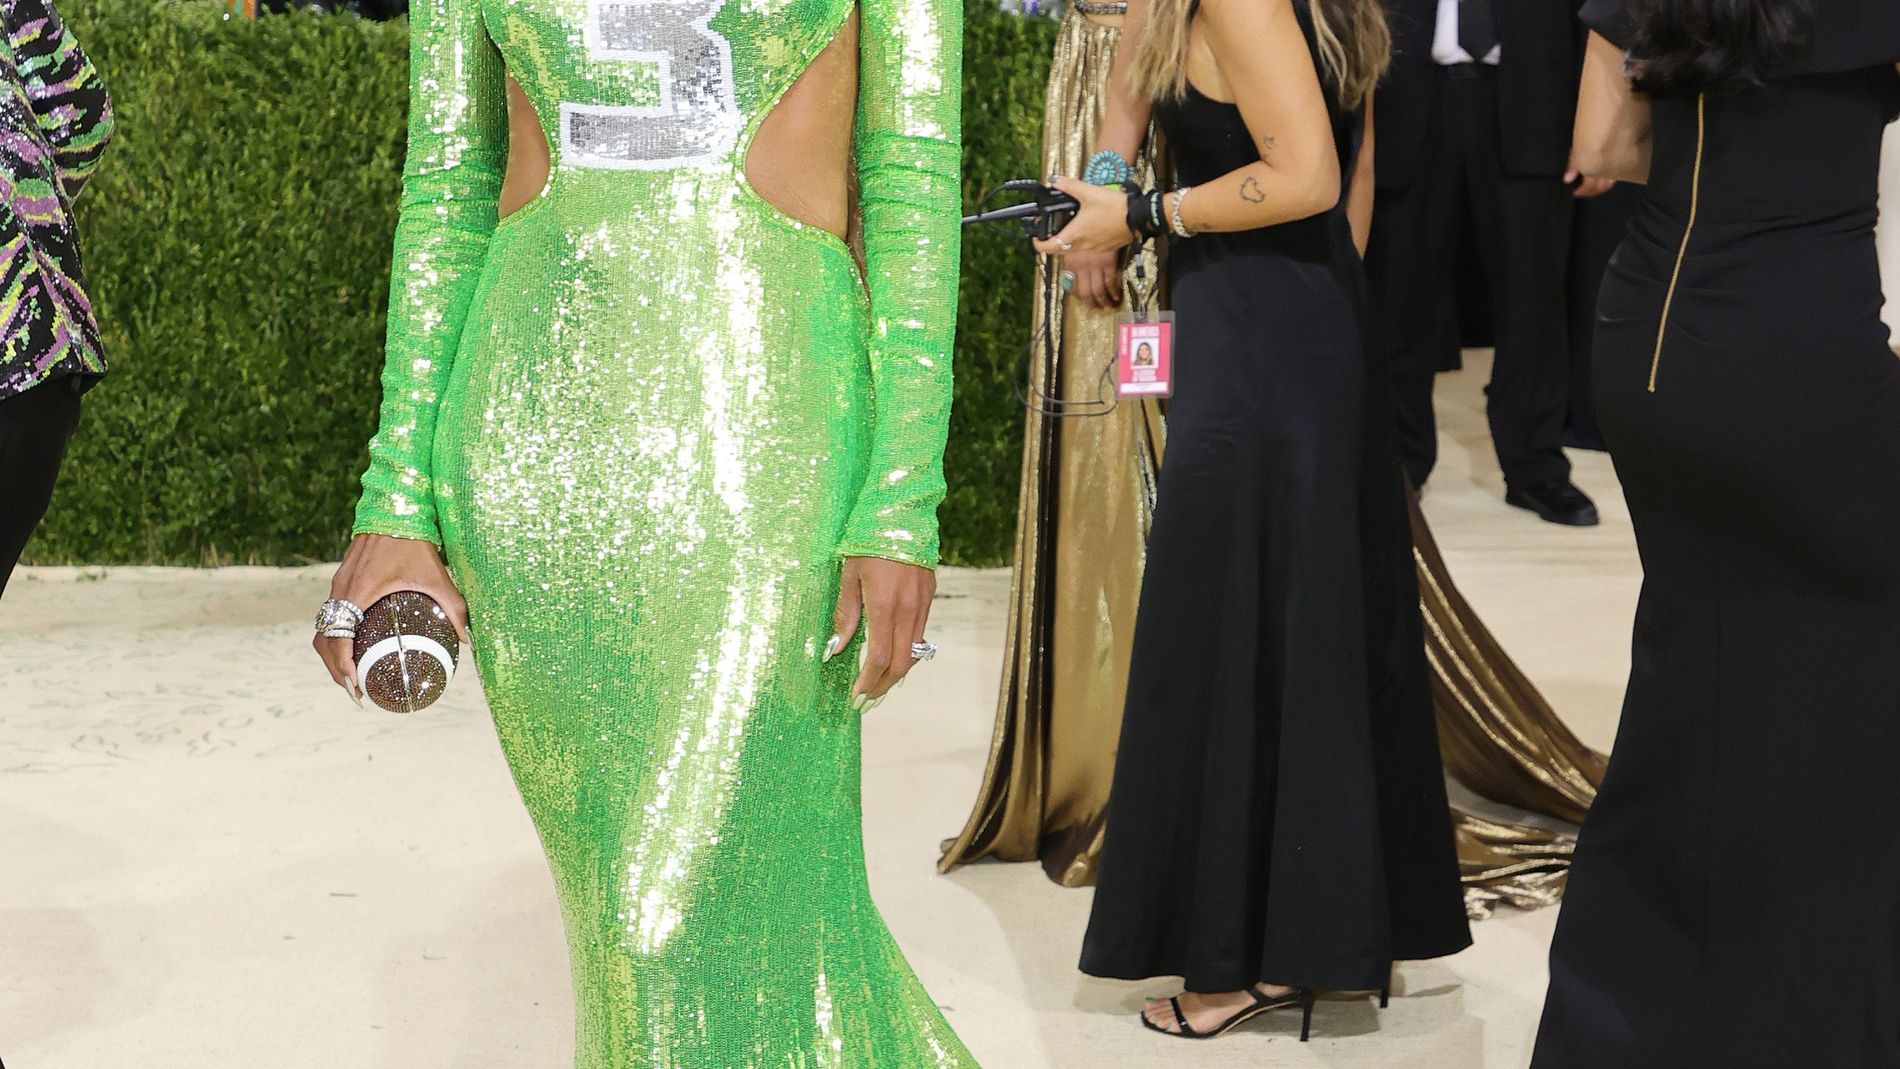 Ciara's Peter Dundas Jersey Dress at the 2021 Met Gala